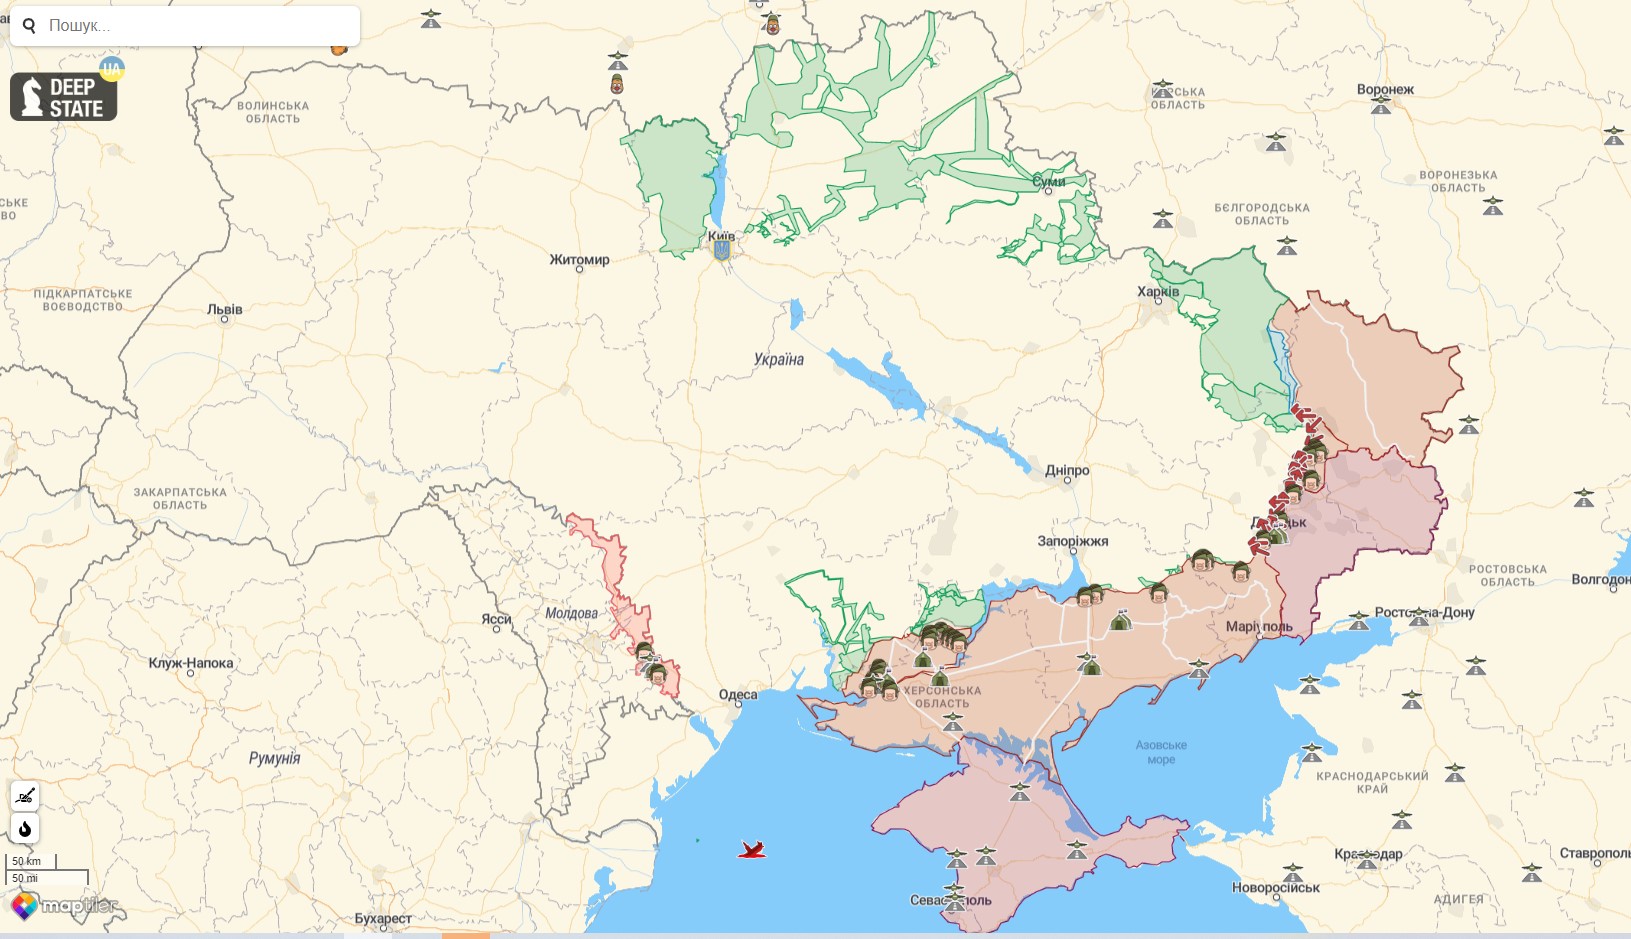 Боевые действия против РФ на территории Украины на 26 октября